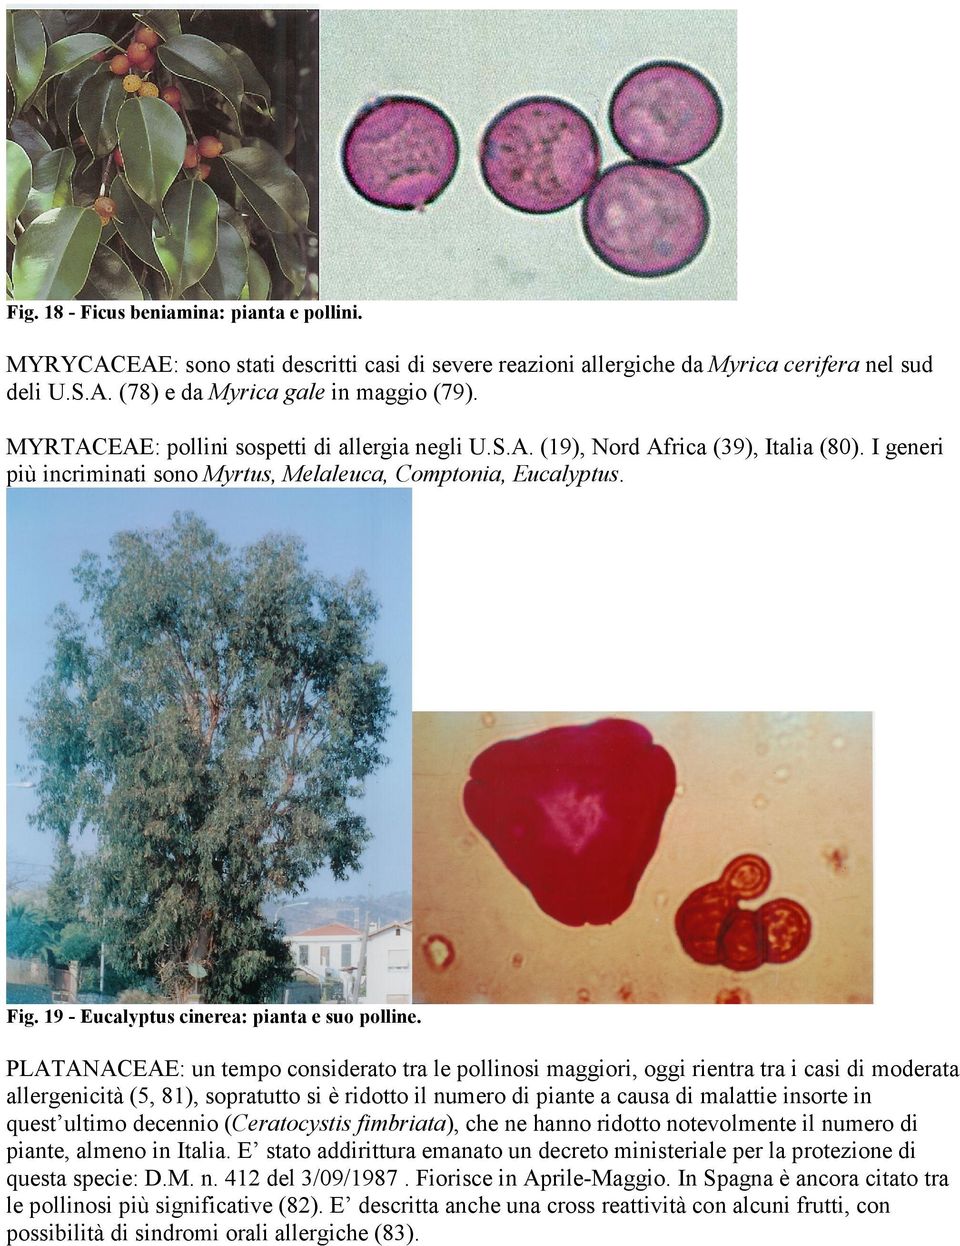 19 - Eucalyptus cinerea: pianta e suo polline.